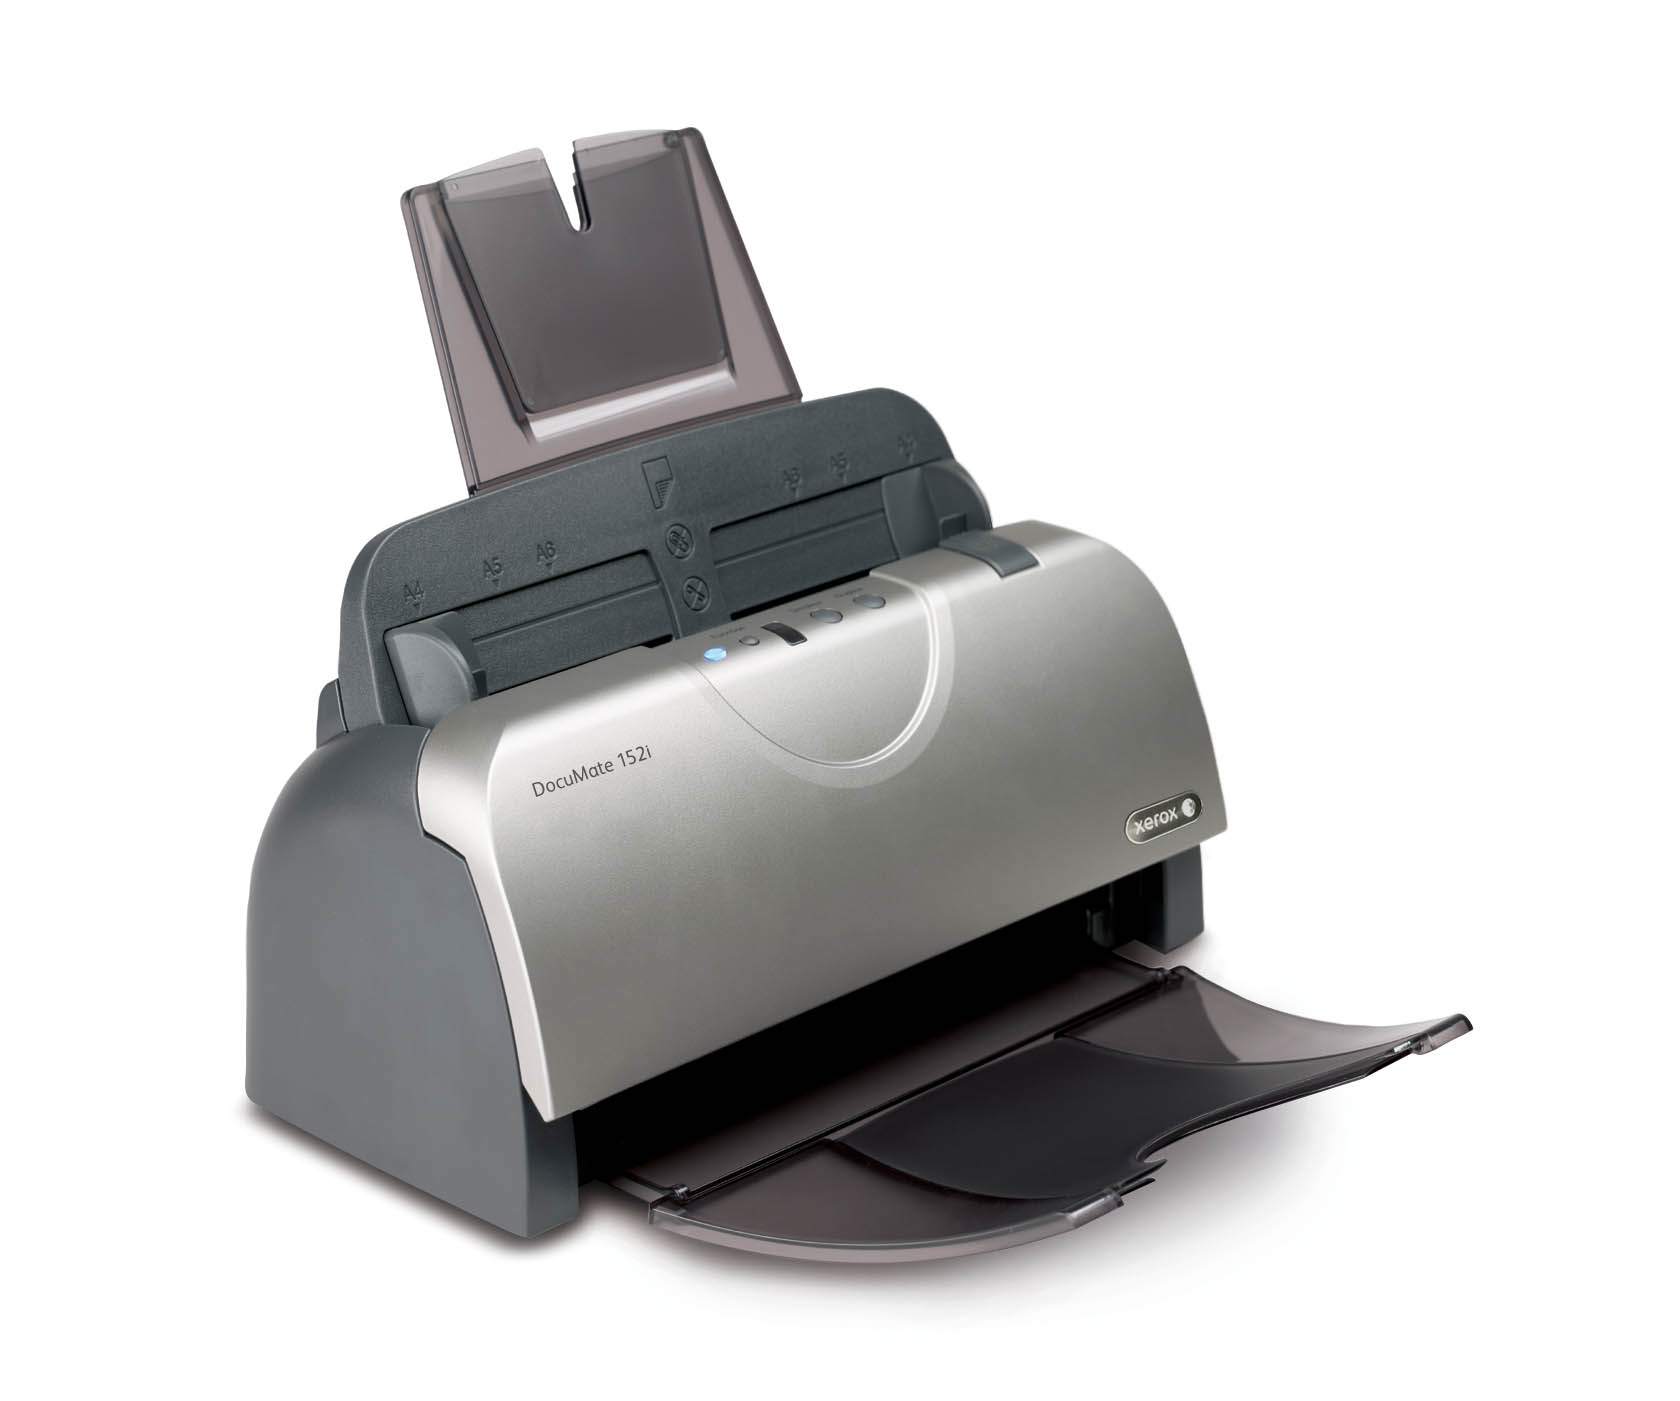 Xerox представила скоростной сканер DocuMate 152i 